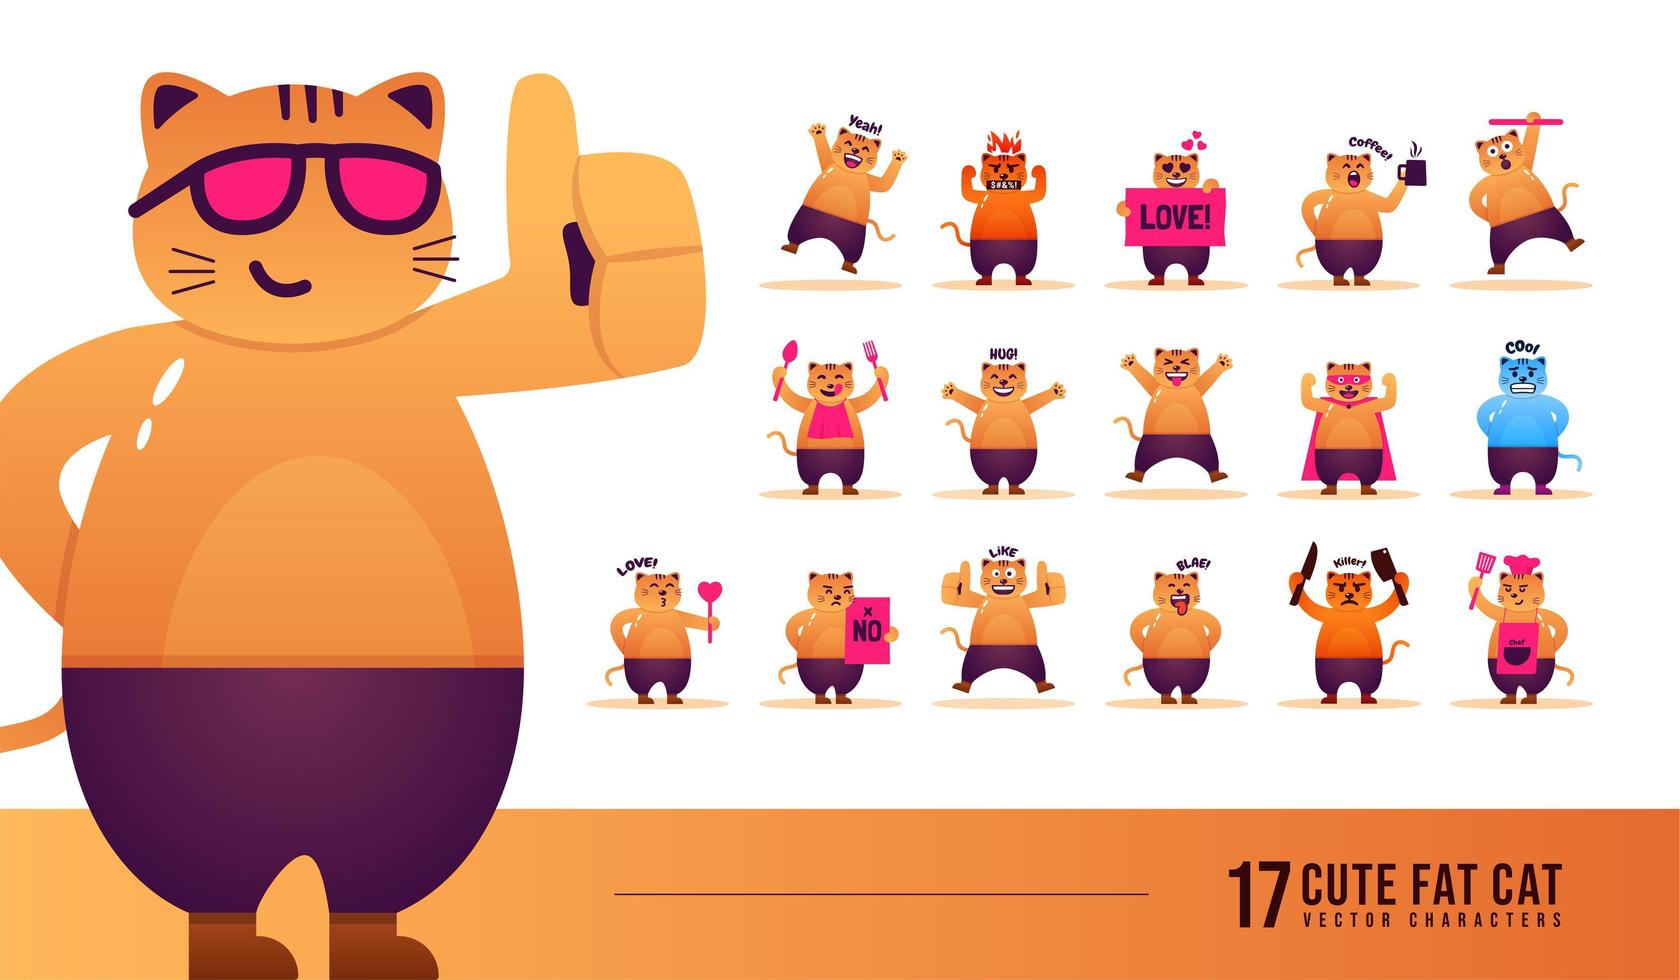 conjunto de vectores de personajes de gatos gordos lindos, expresión facial de emoticonos de gatos para publicaciones y reacciones sociales, ilustración de caricaturas de gatos en diferentes poses